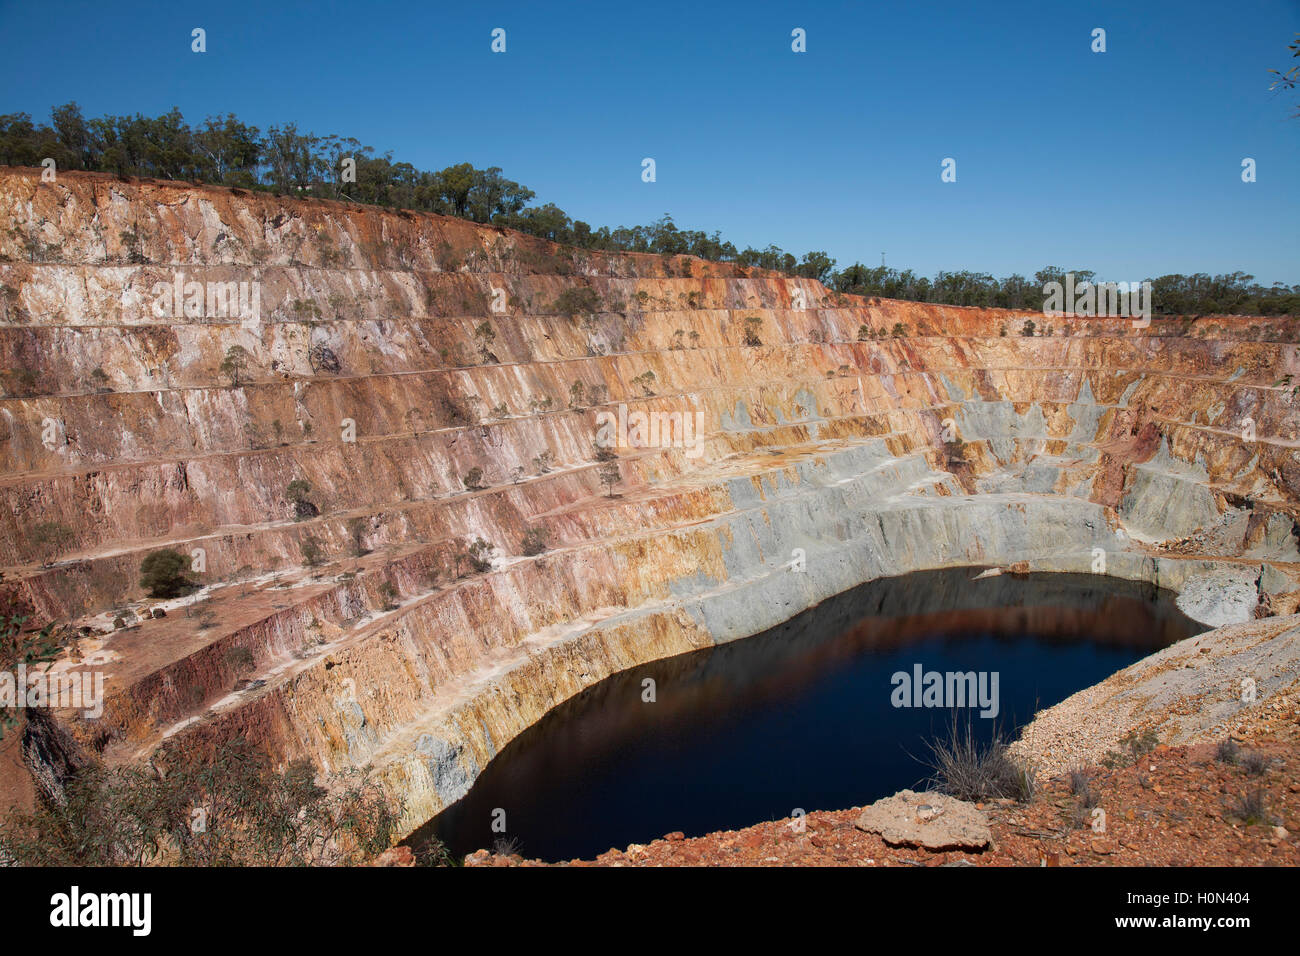 Piste touristique est à l'ancienne colline de pointe de la mine d'or à ciel ouvert d'Australie Nouvelle Galles du Sud Banque D'Images